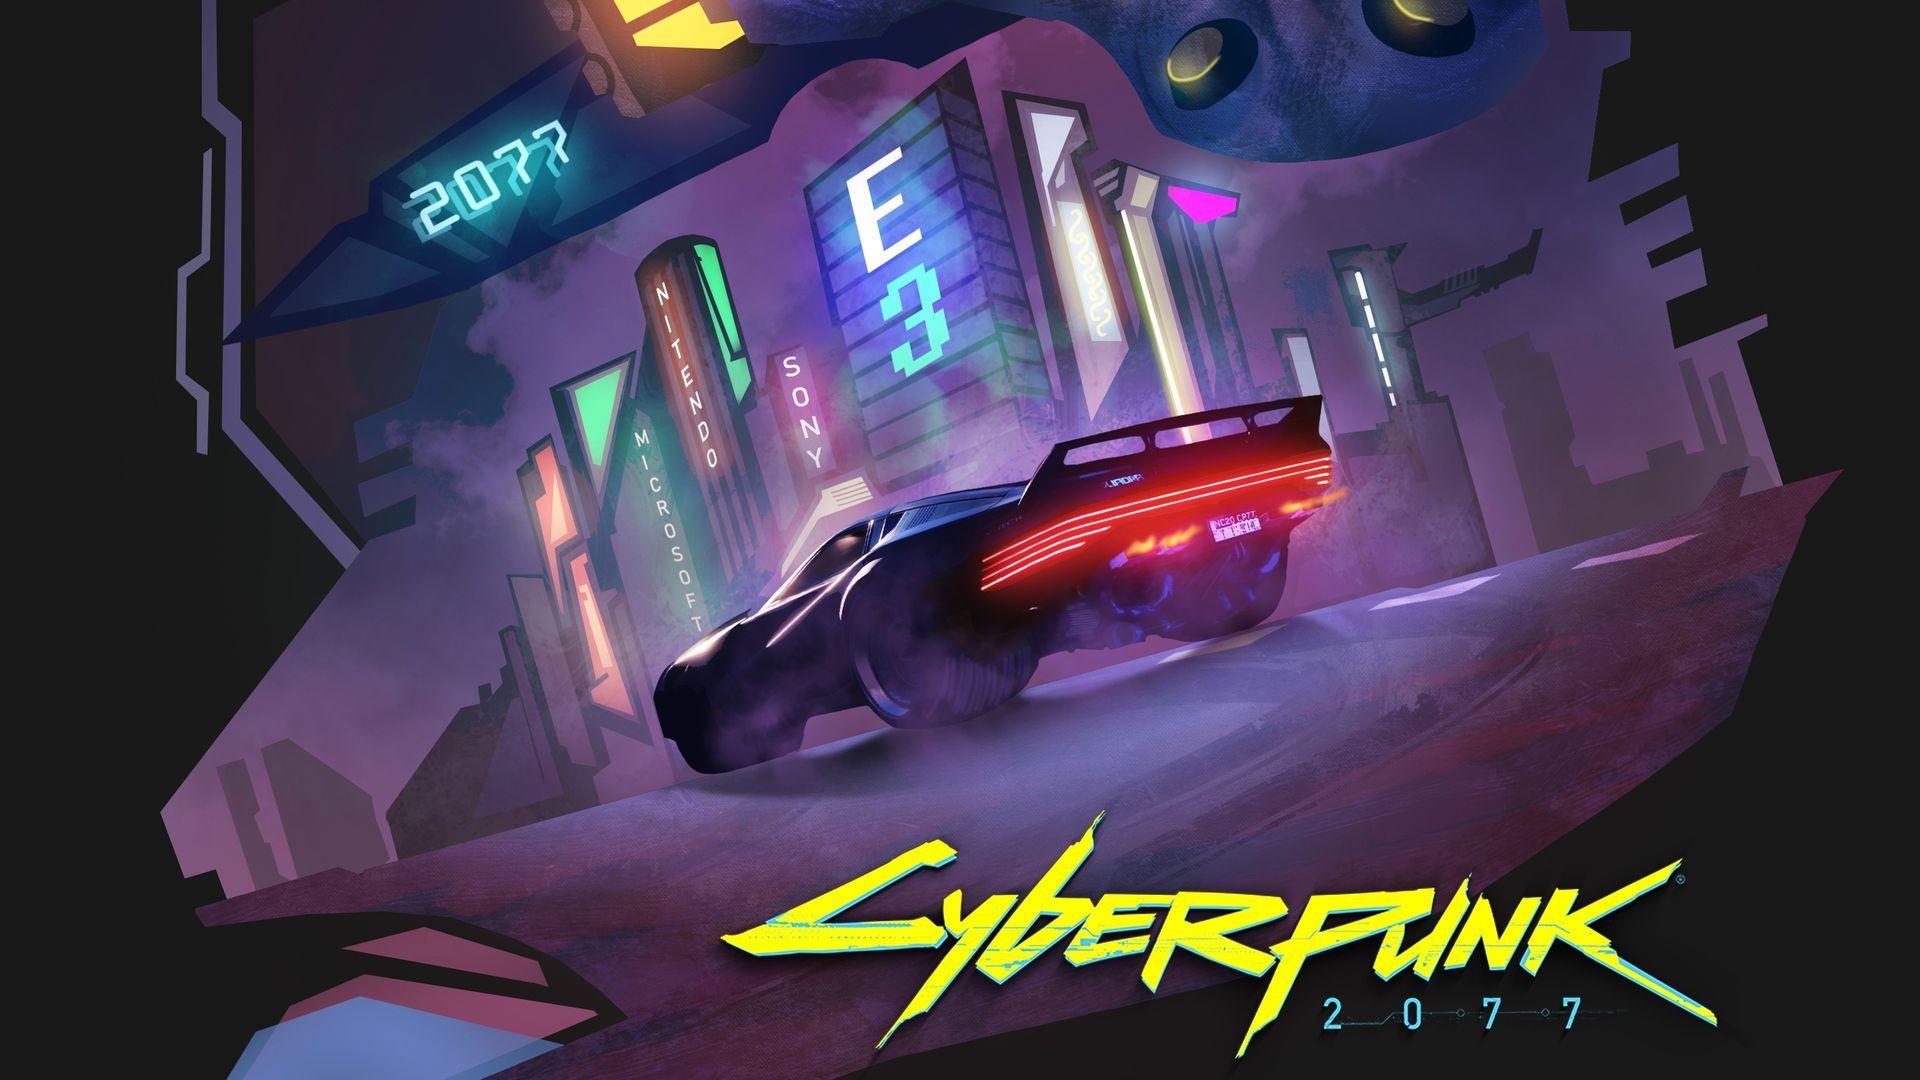 Cyberpunk 2077 Car Wallpapers Top Free Cyberpunk 2077 Car Backgrounds Wallpaperaccess 6989